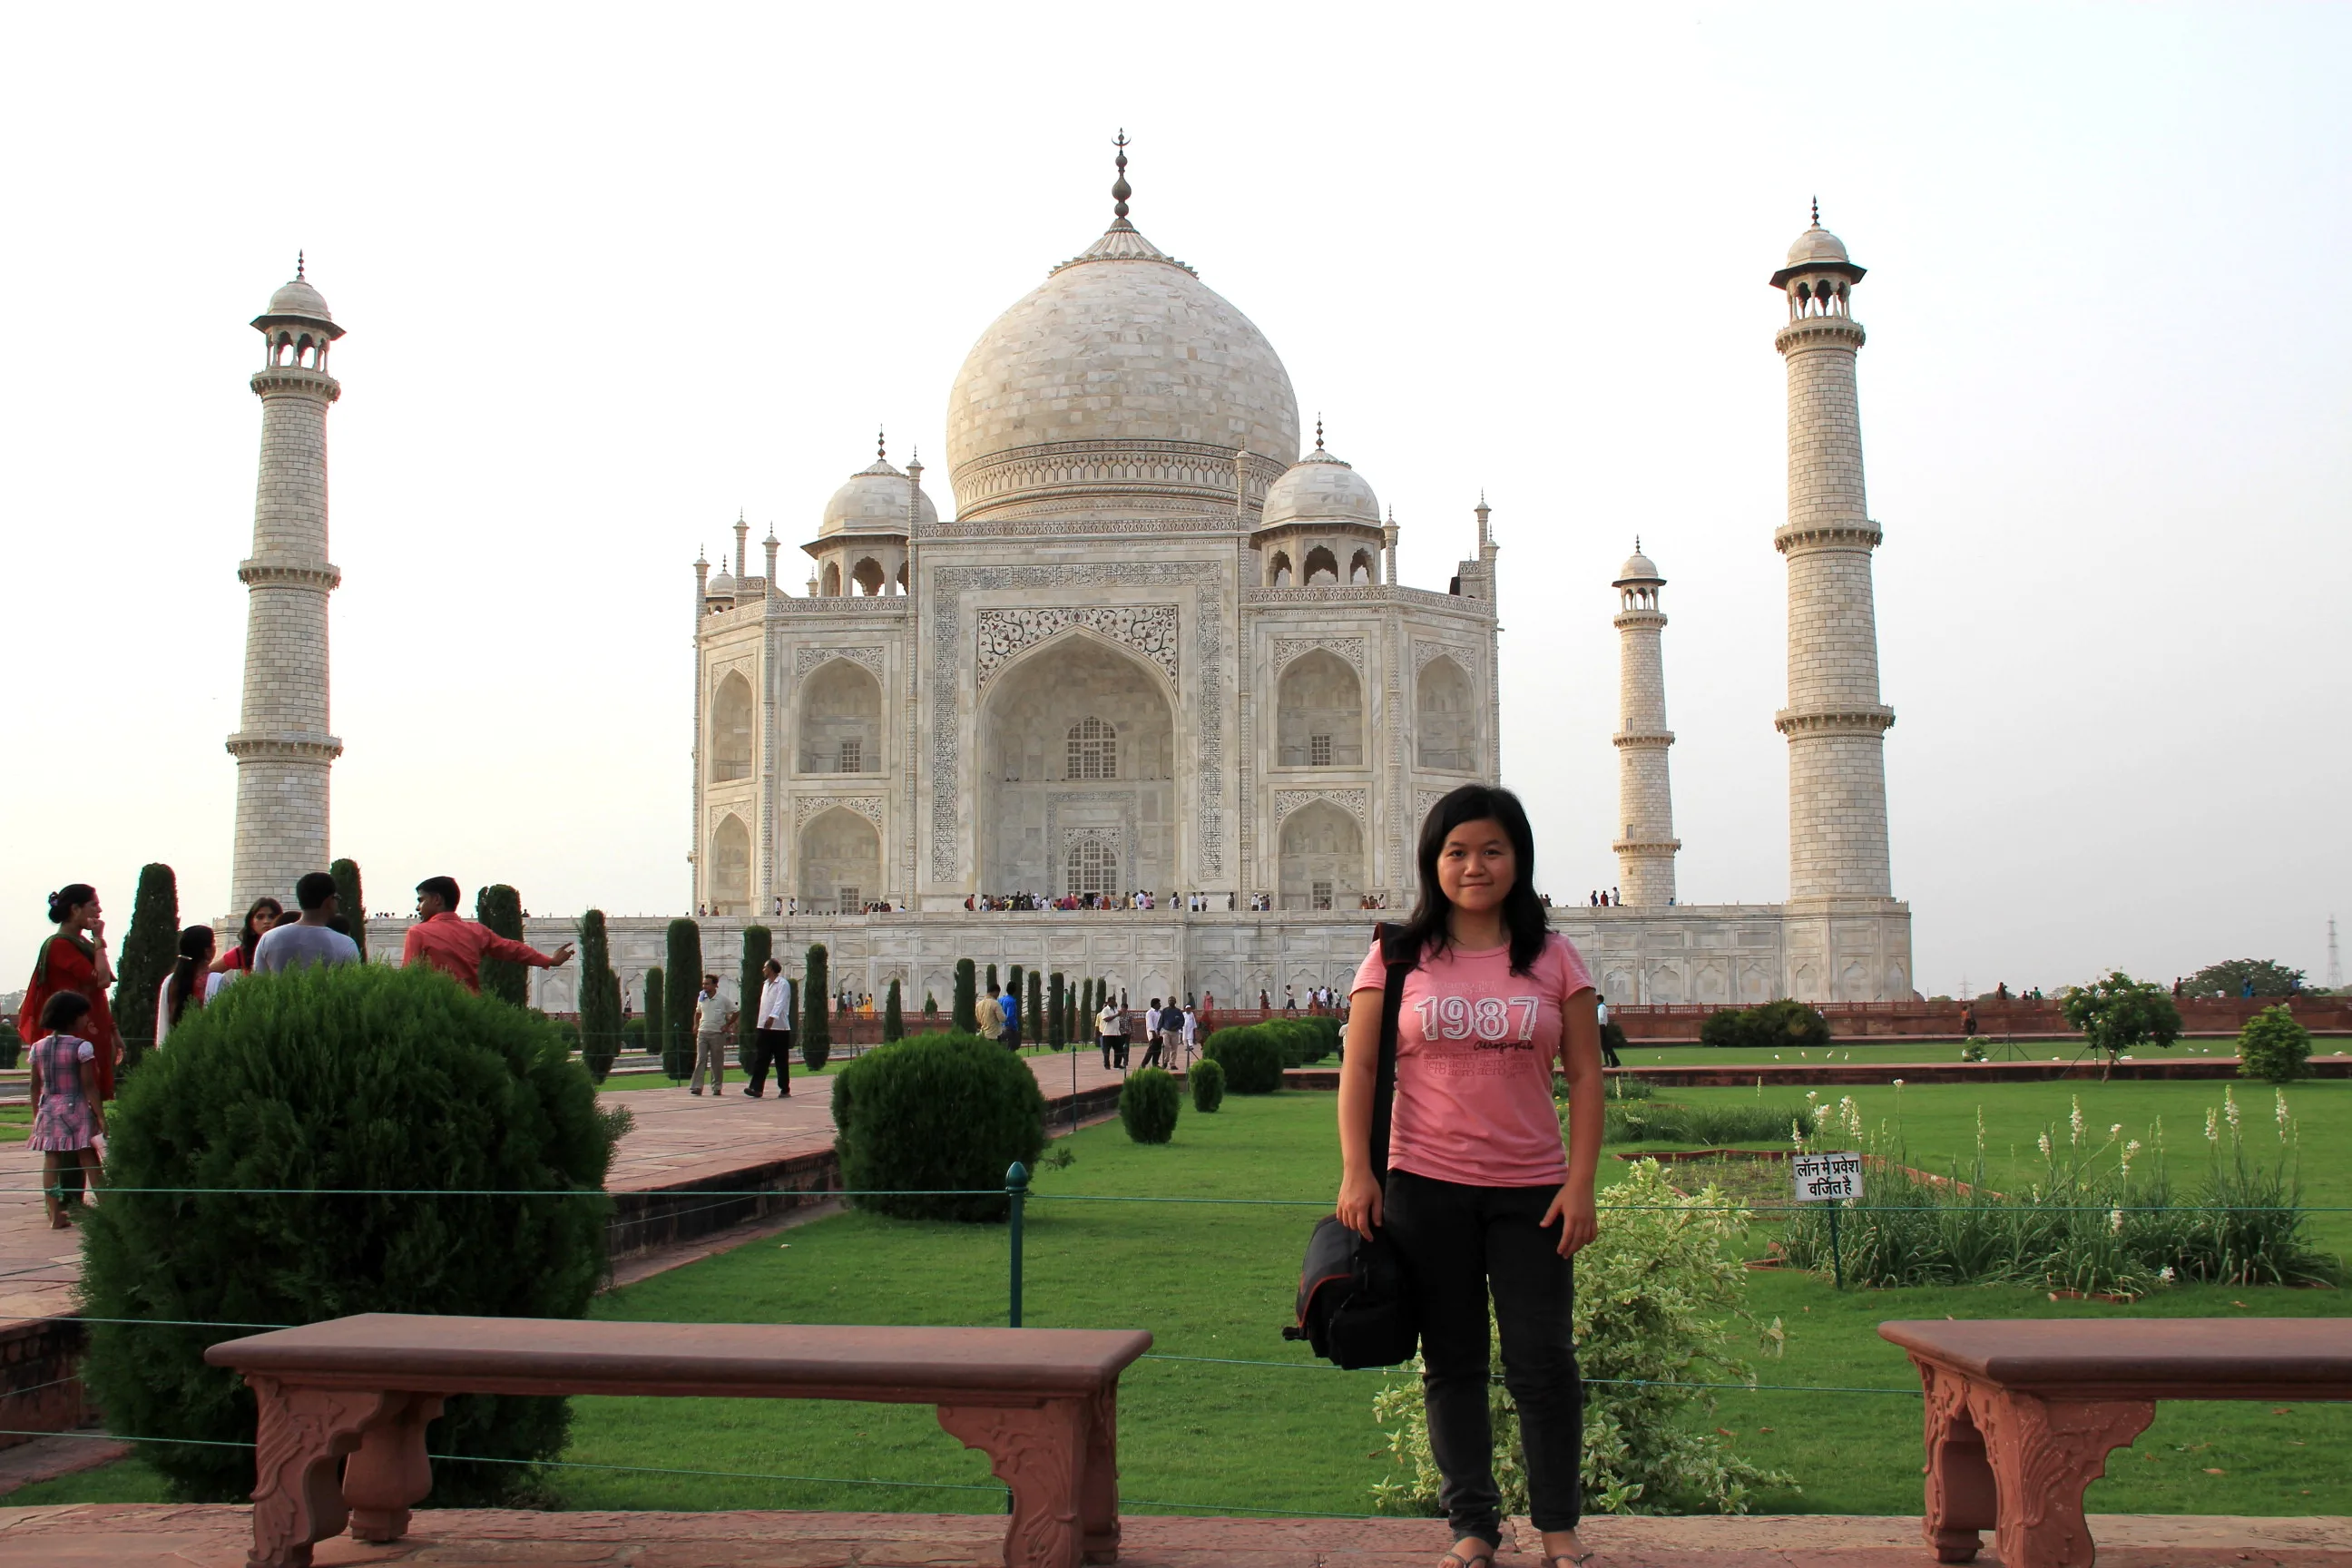 Me at Taj Mahal, Agra, India